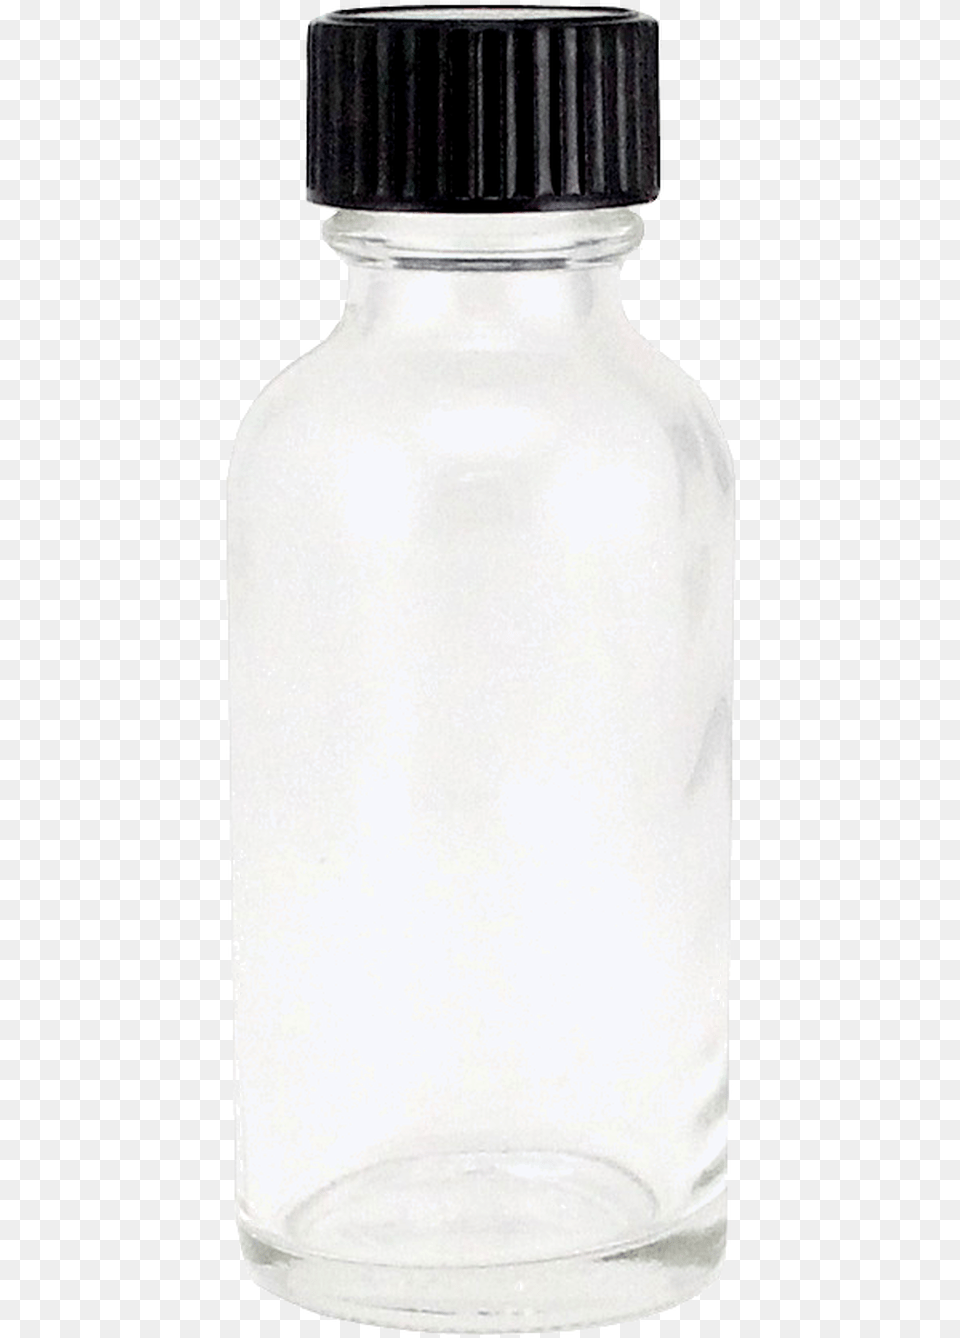 Glass Bottle, Jar, Beverage, Milk Free Transparent Png